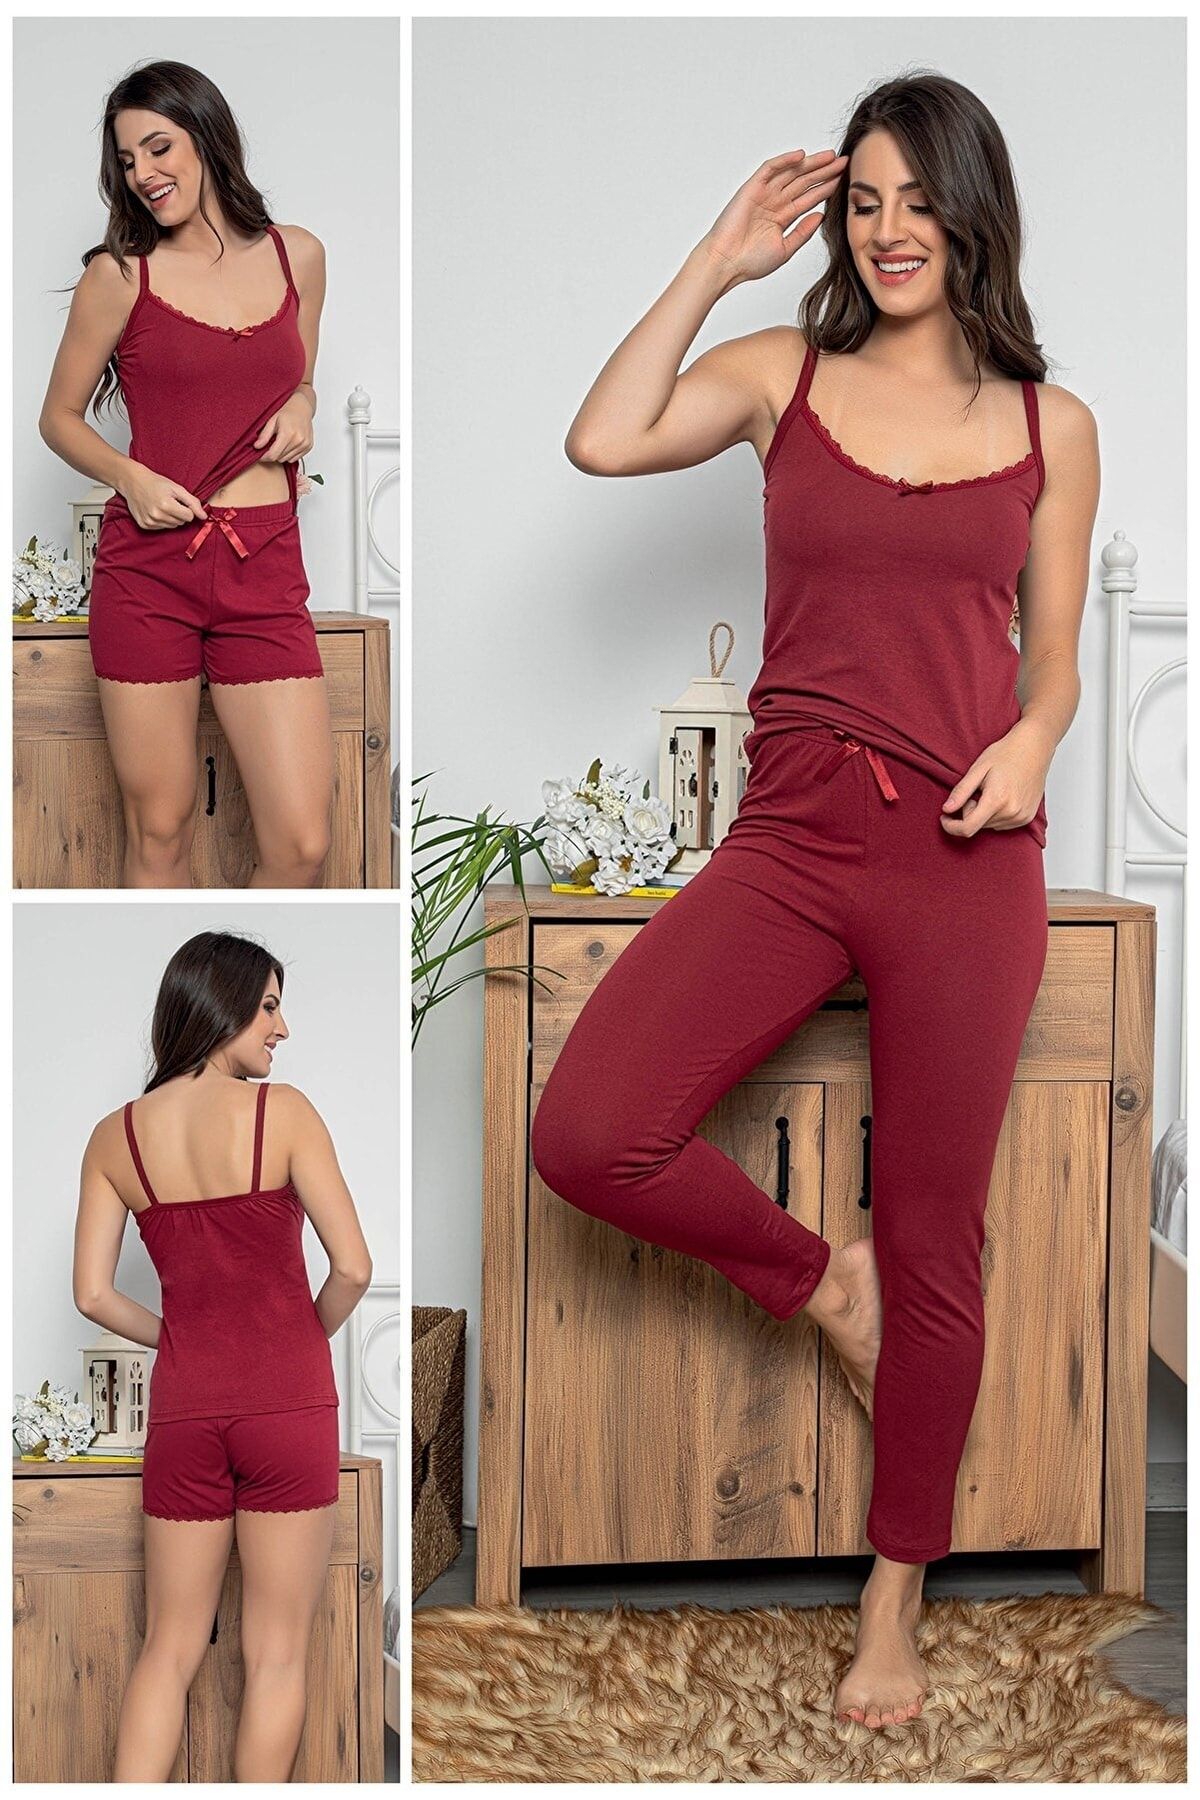 MyBen Kadın Bordo Renkli Dantel Detaylı Şortlu Ve Taytlı Pijama Takımı 3'lü Set 75018